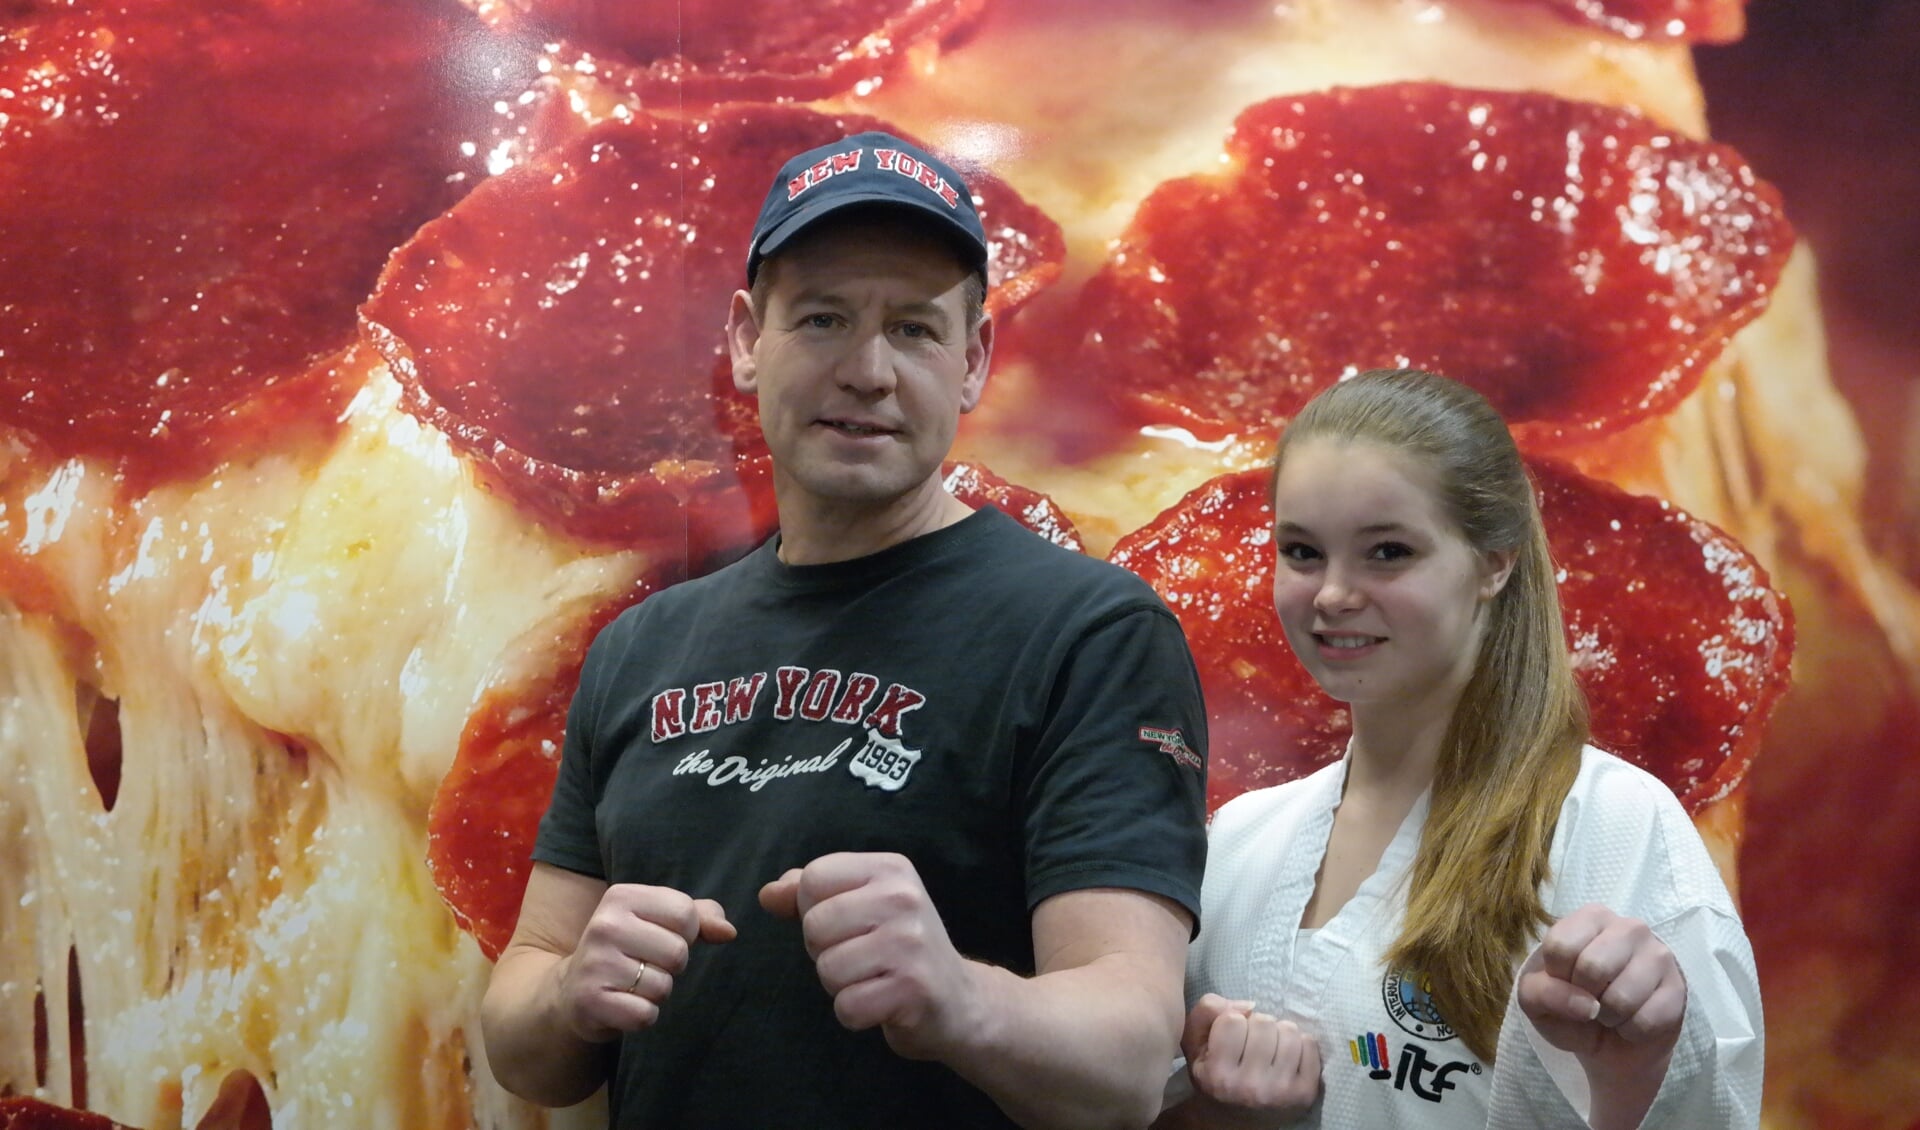 Erik Keus sponsort met zijn New York Pizza de Taekwondoka Daphne van der Wijngaart, die gaat acteren op het wereldkampioenschap in Italië.